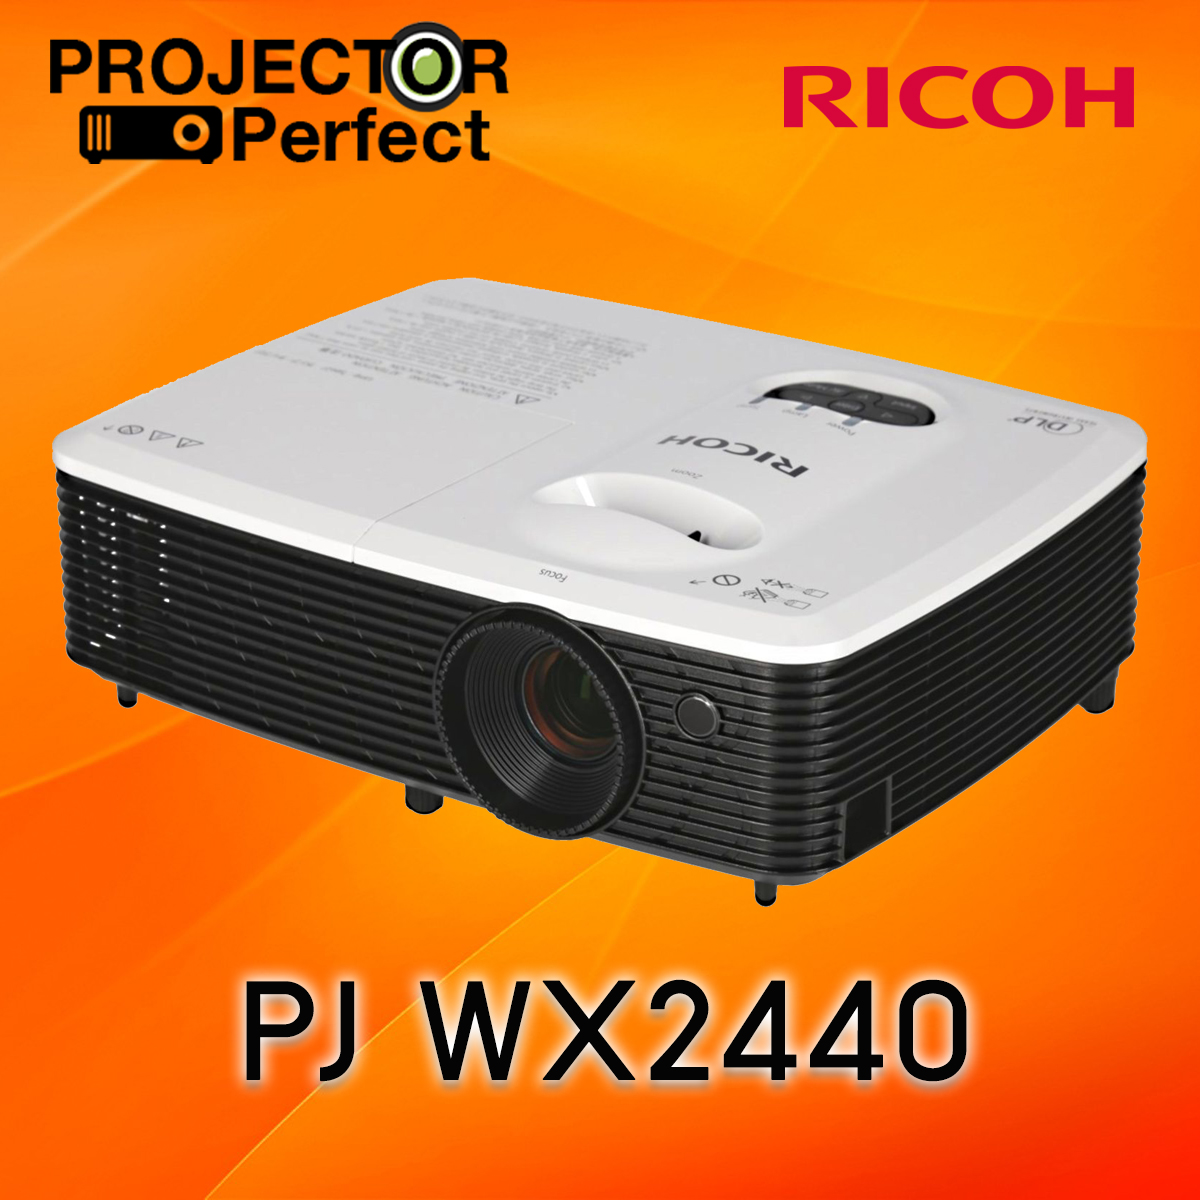 リコー(RICOH) PJ WX2440 エントリープロジェクター 3100lm WXGA - TV